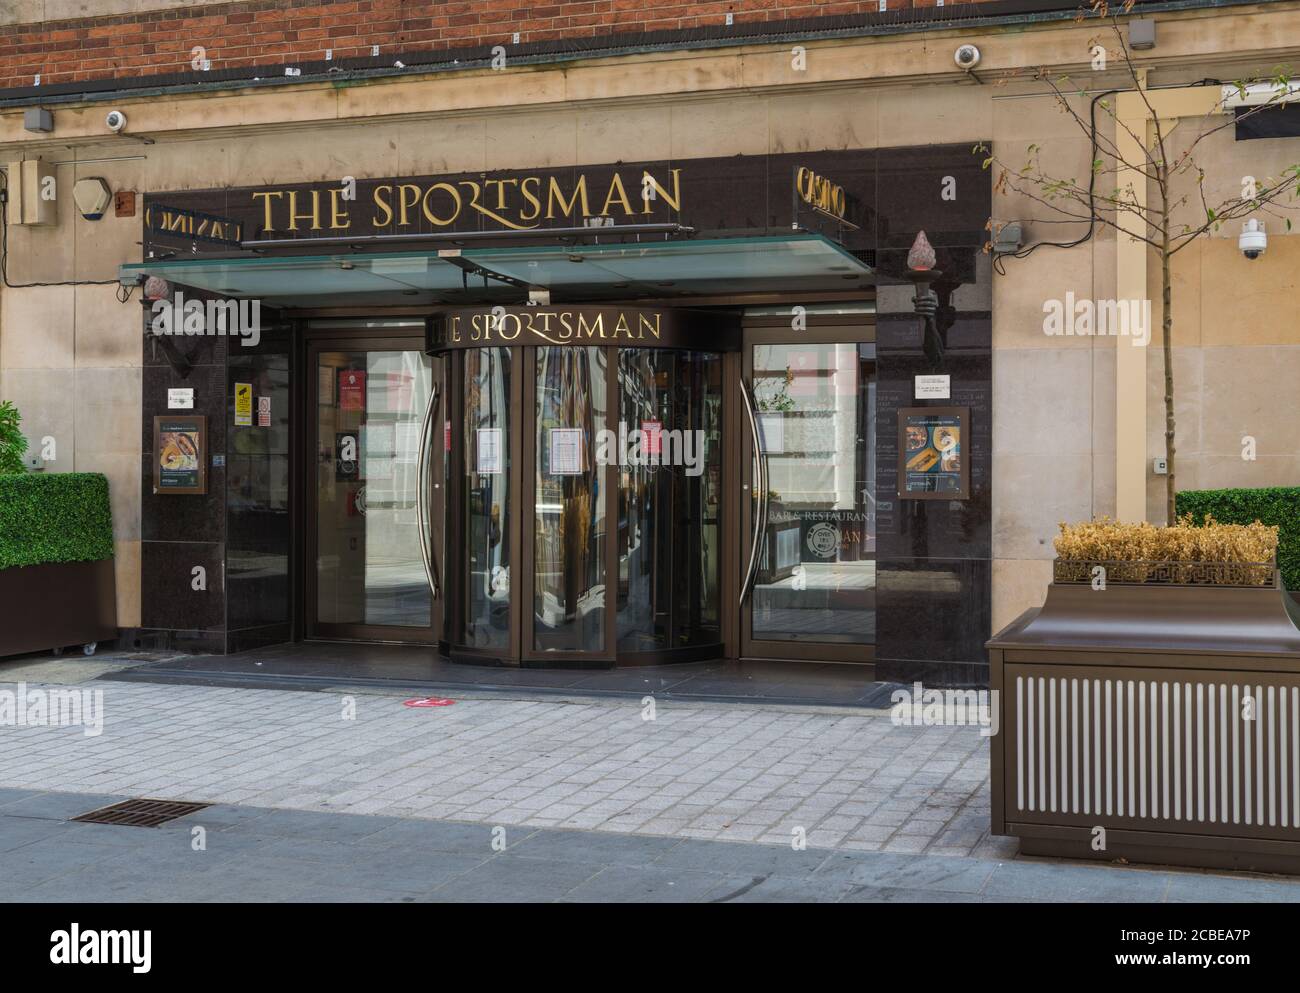 Extérieur du casino Sportsman dans la rue Vieux-Québec, Londres W1, Angleterre, Royaume-Uni Banque D'Images